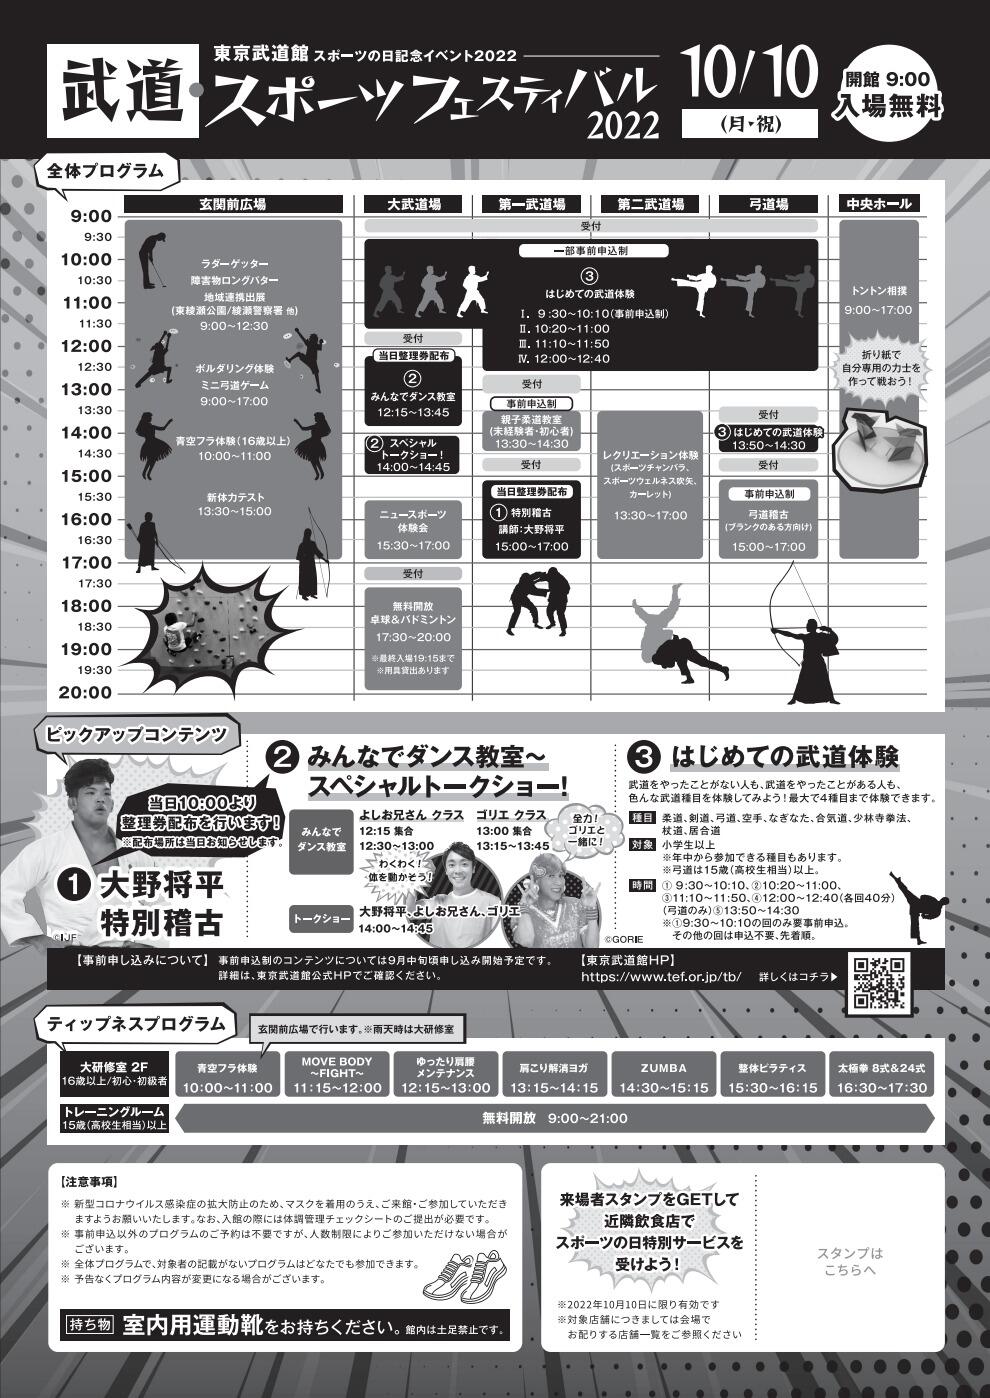 武道・スポーツフェスティバル2022「はじめての武道体験」【剣道】